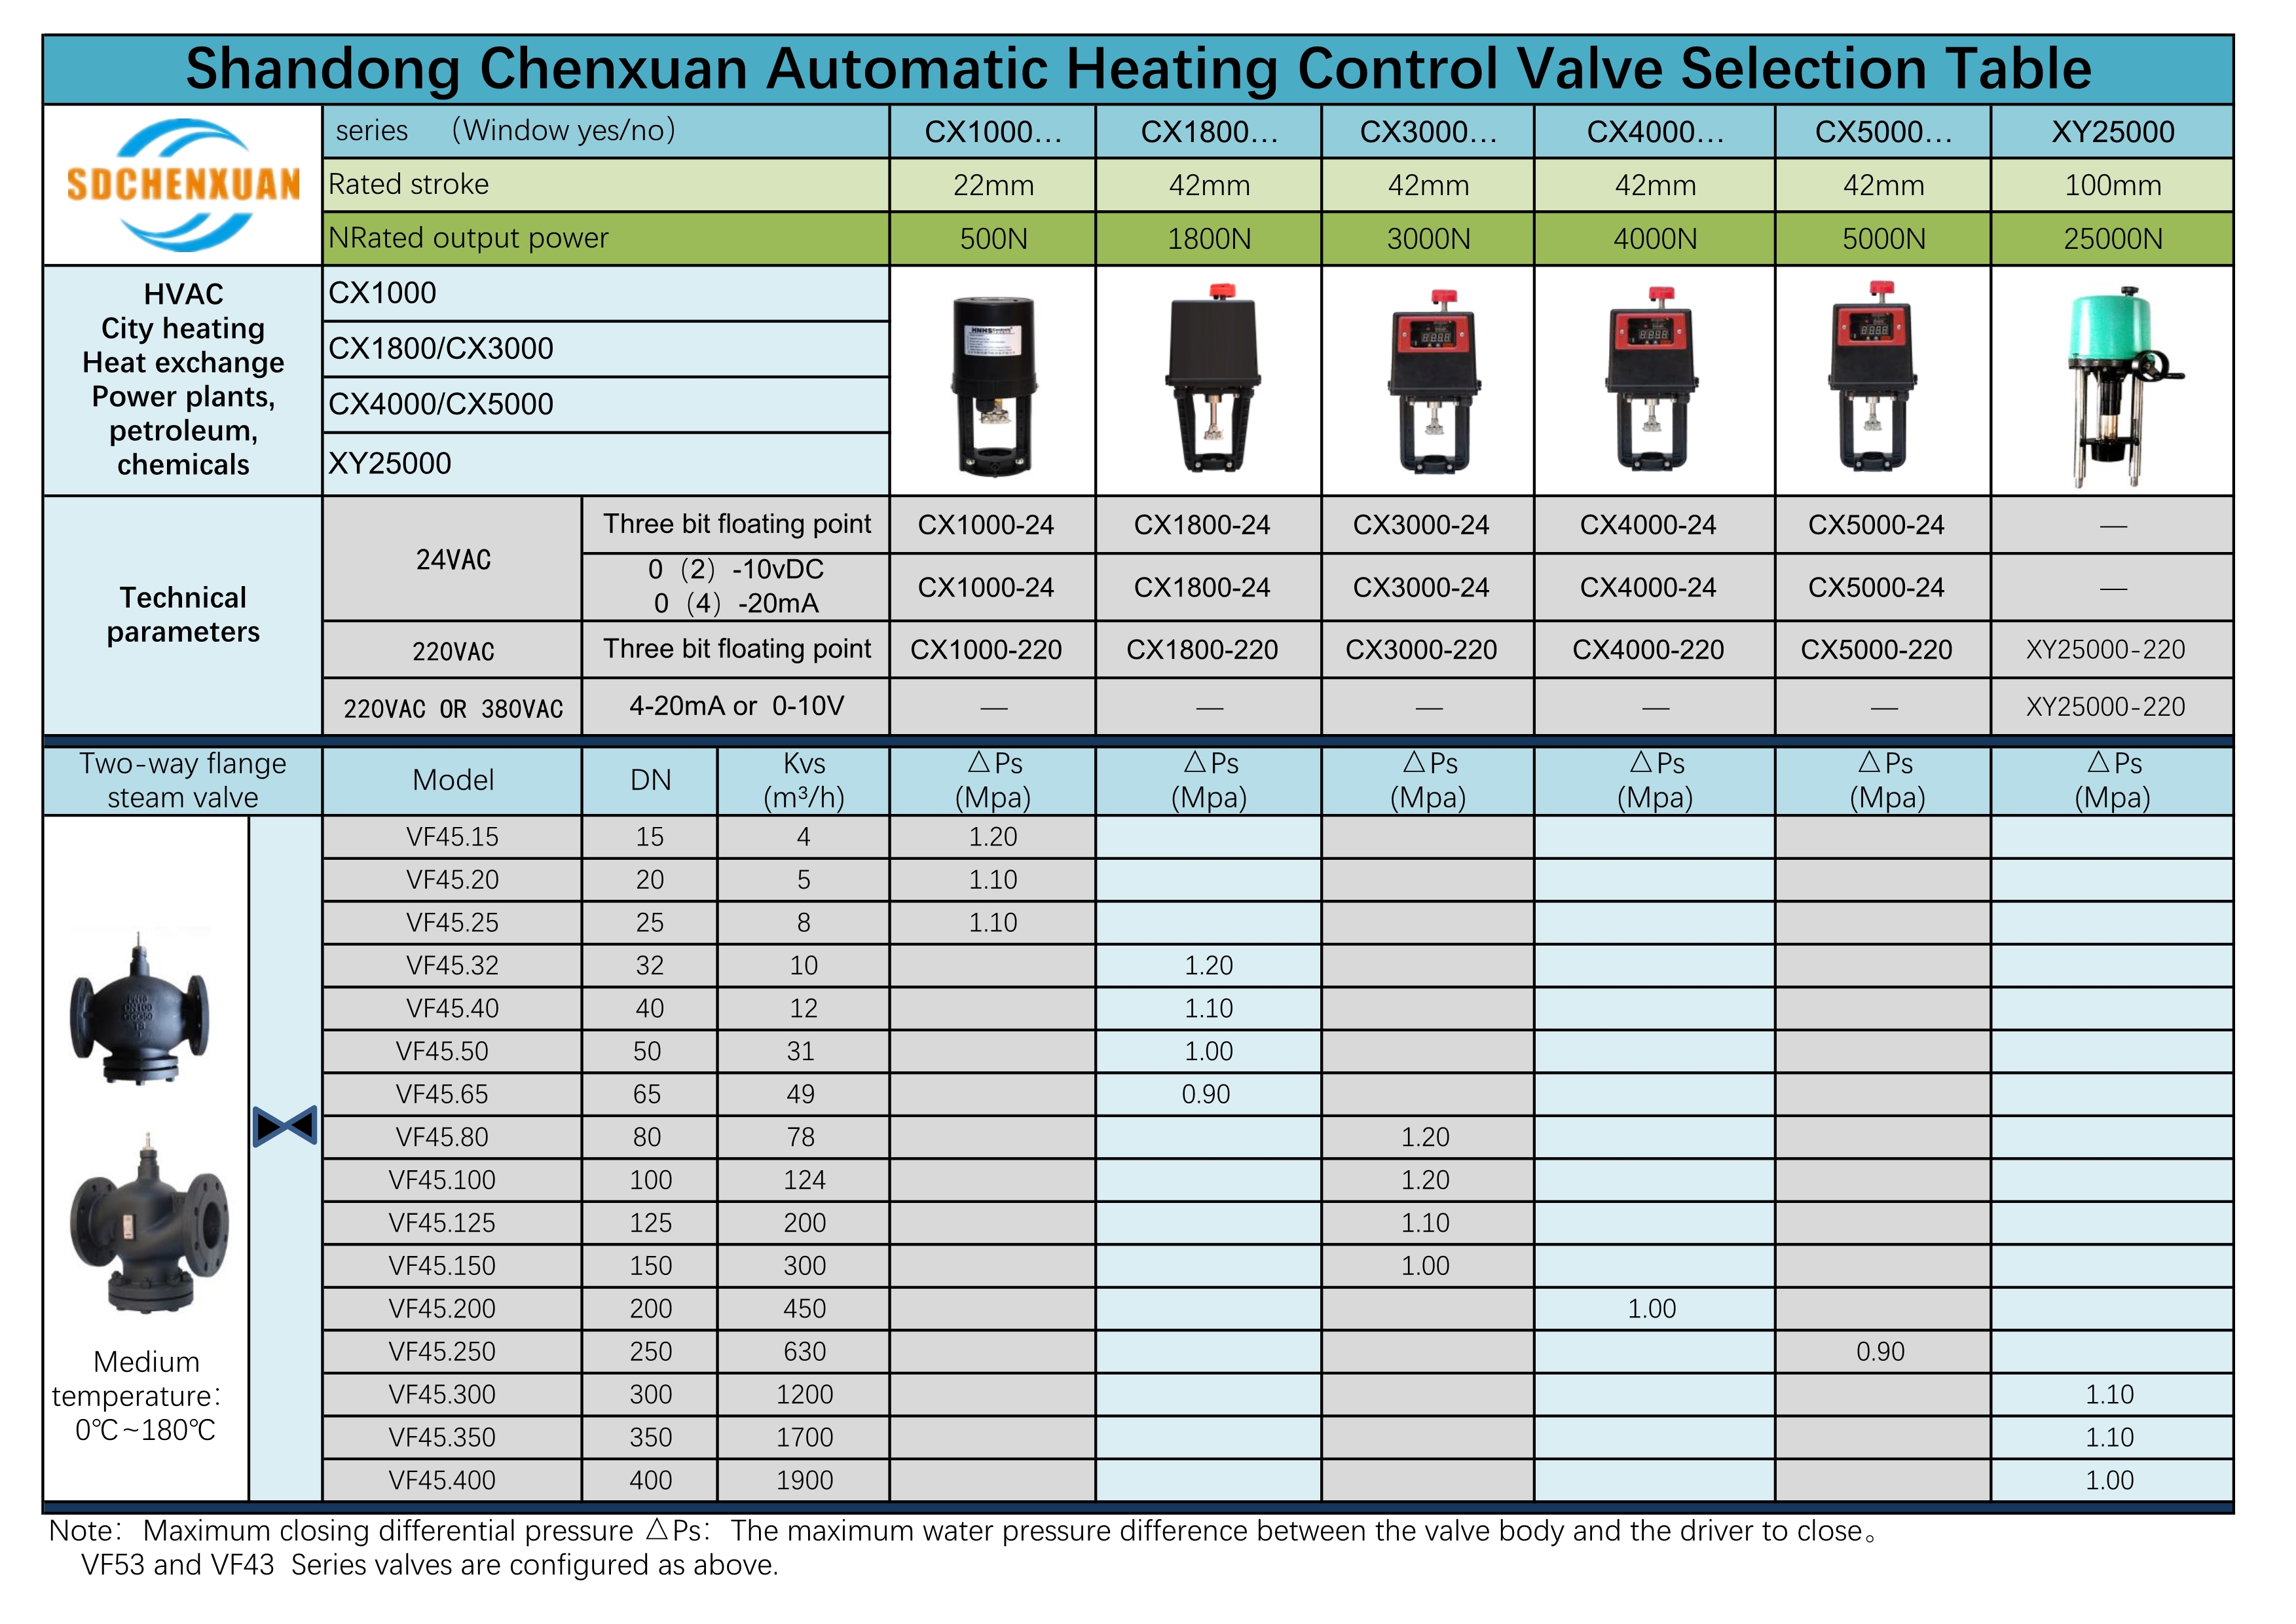  Tabela de seleção de válvula de controle de aquecimento automático Shandong Chenxuan 